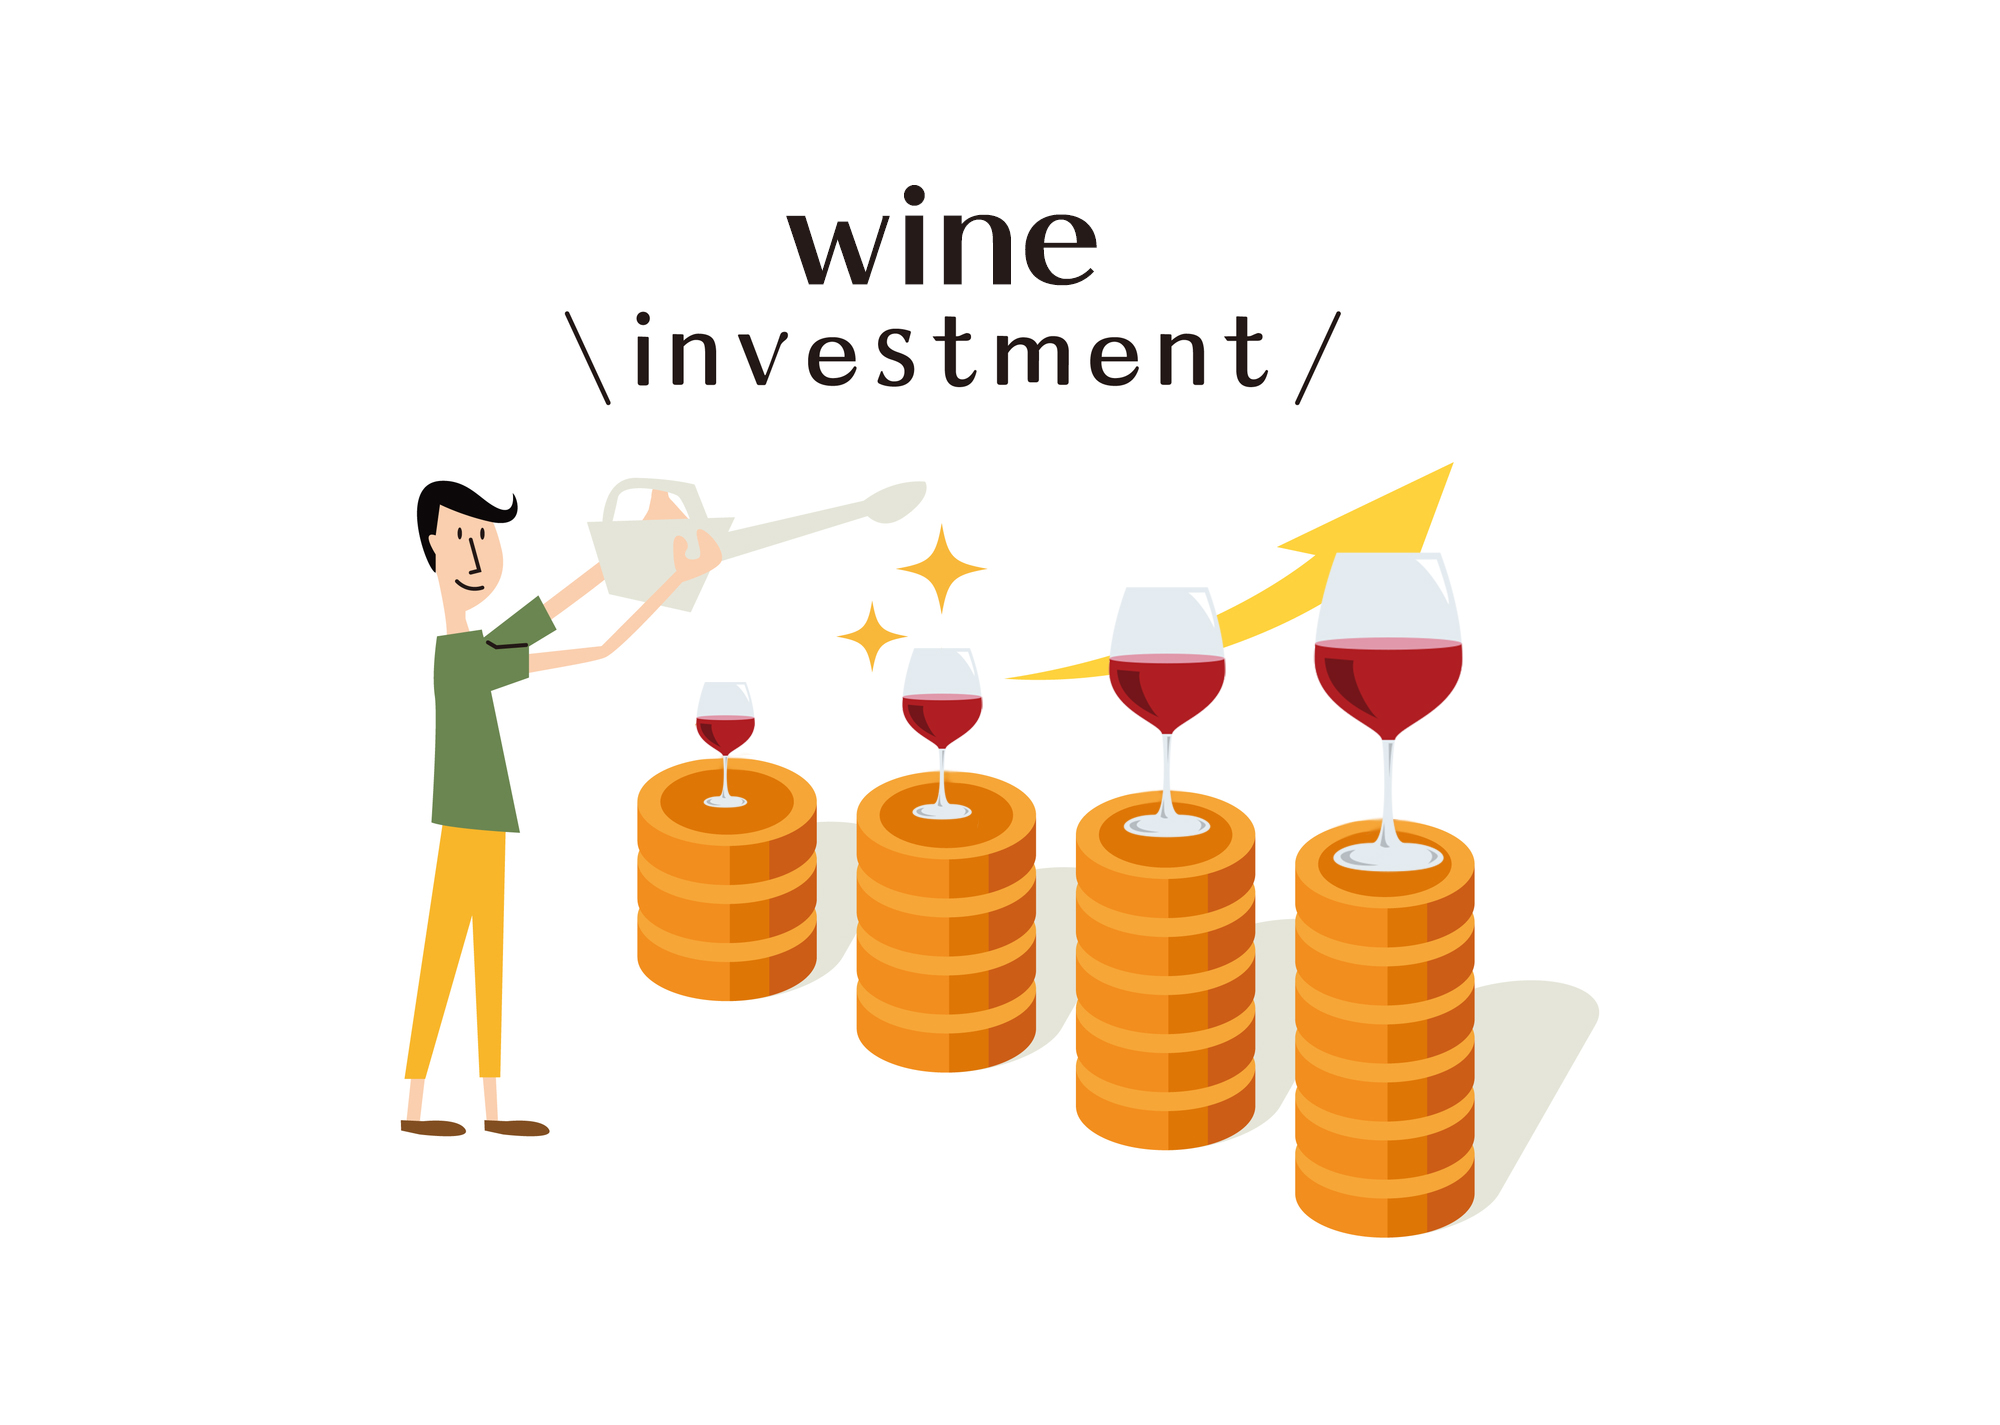 世界一有名なワイン、ロマネコンティ。世界の平均流通価格と評論家評価点